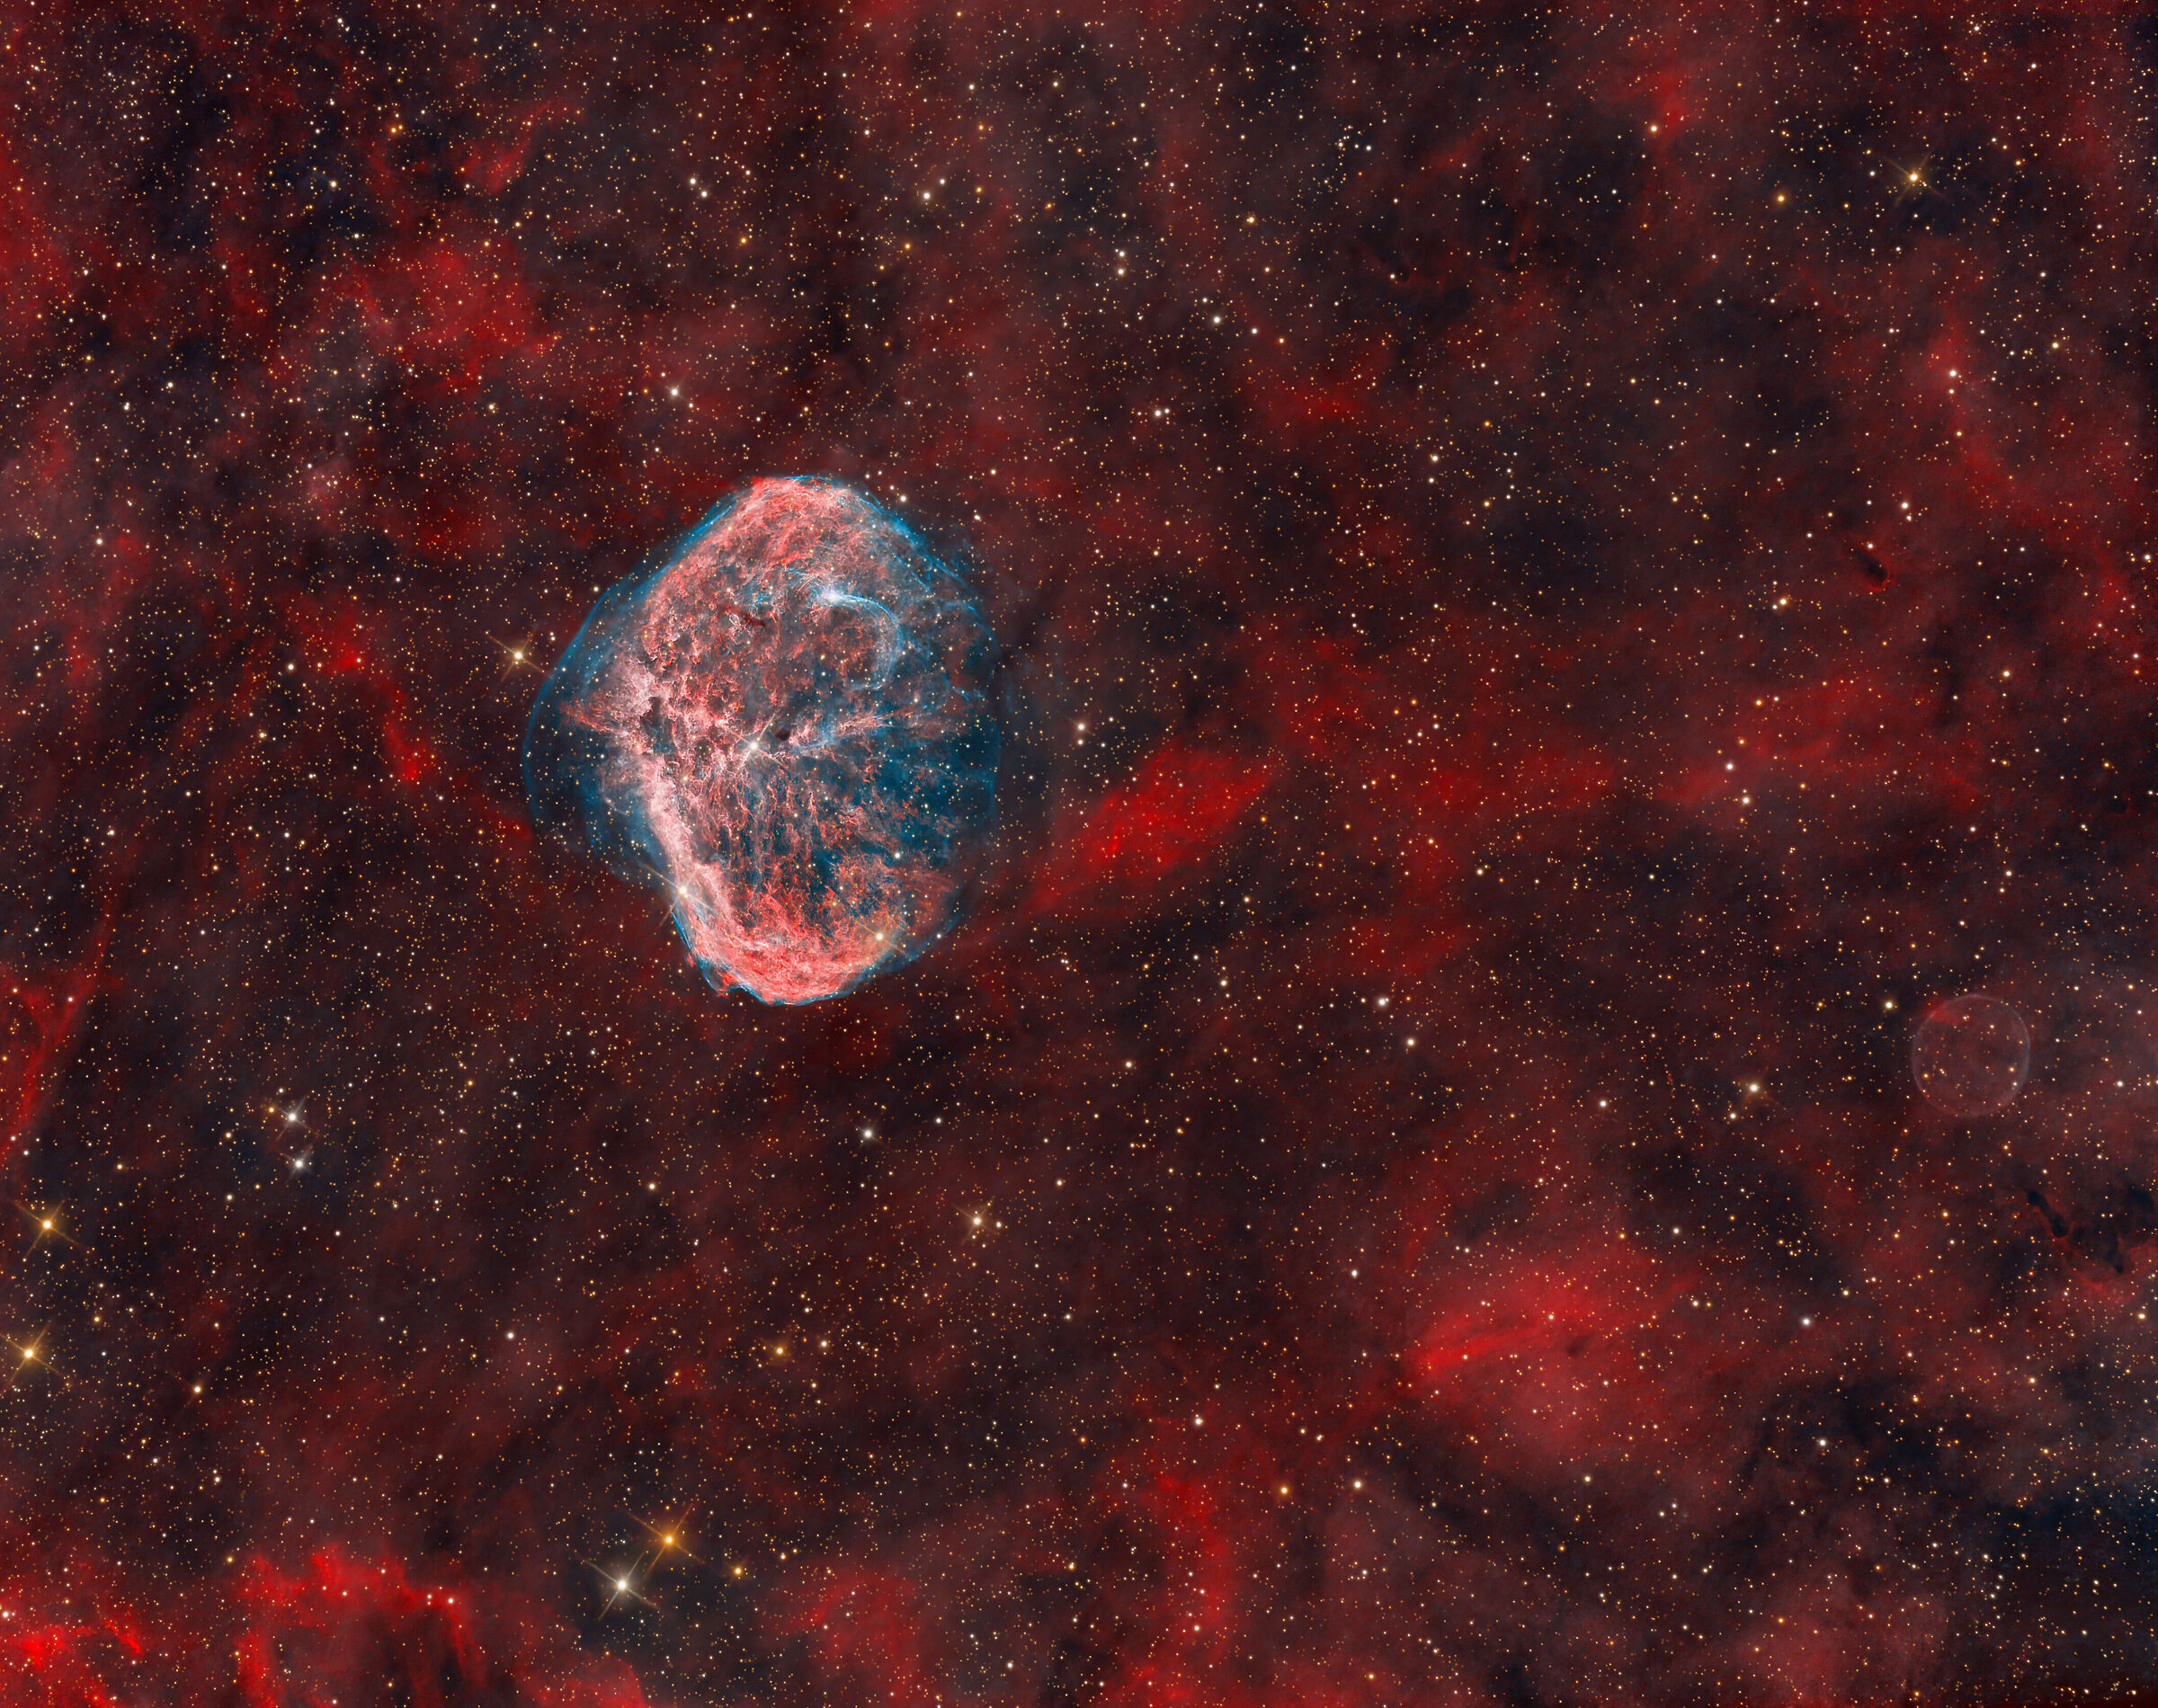 ngc6888+PN G075.5+01.7(Bubble Nebulae)...